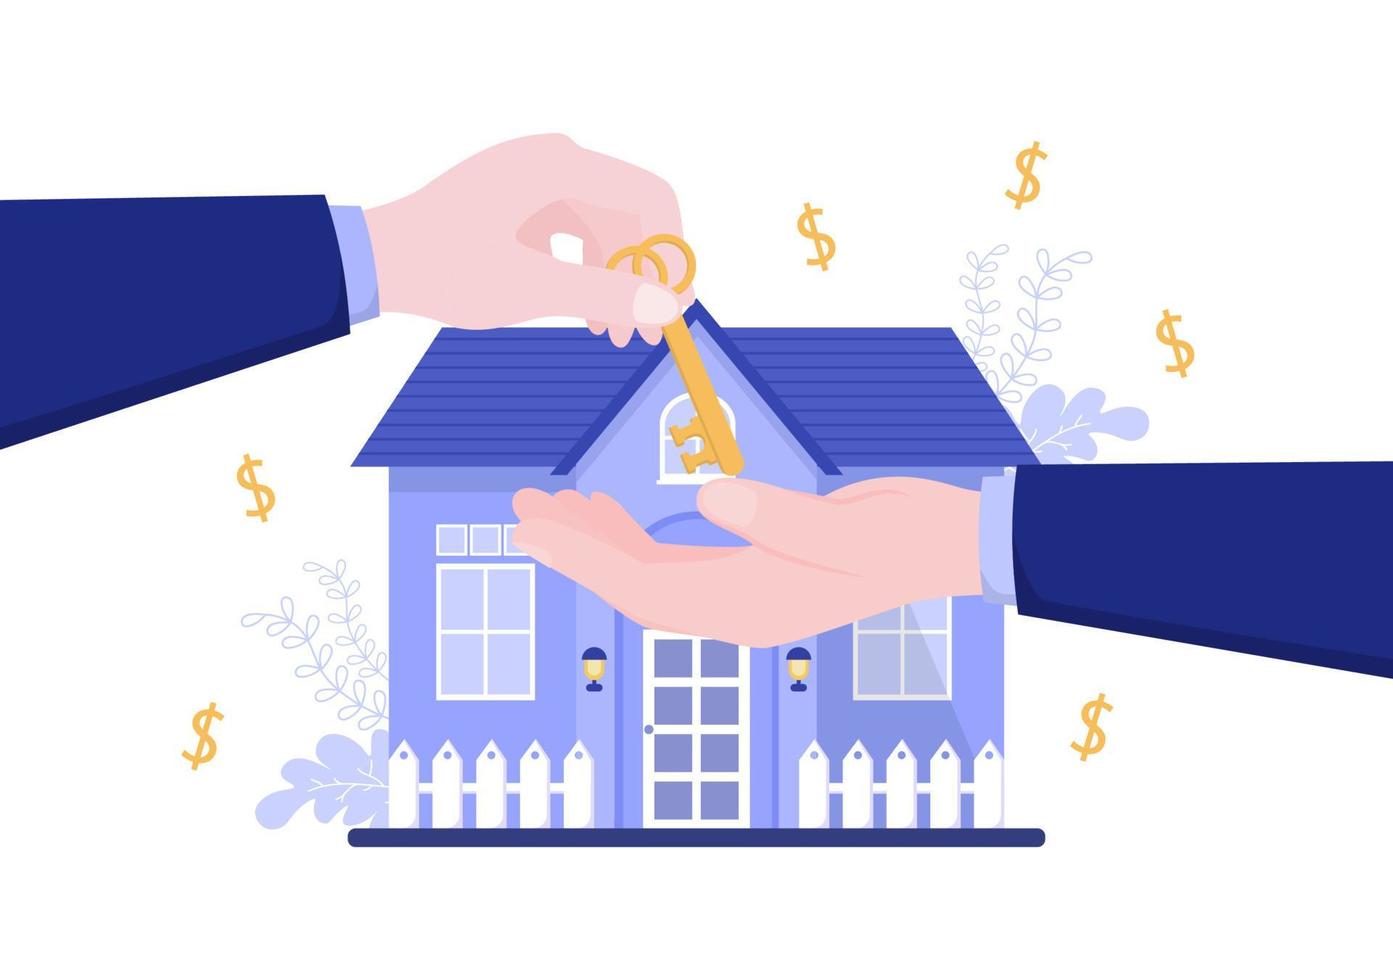 strumenti di debito di prestito ipotecario che sono garantiti da beni immobiliari come servizi immobiliari, affitto, acquisto di casa o casa d'aste. illustrazione vettoriale di sfondo